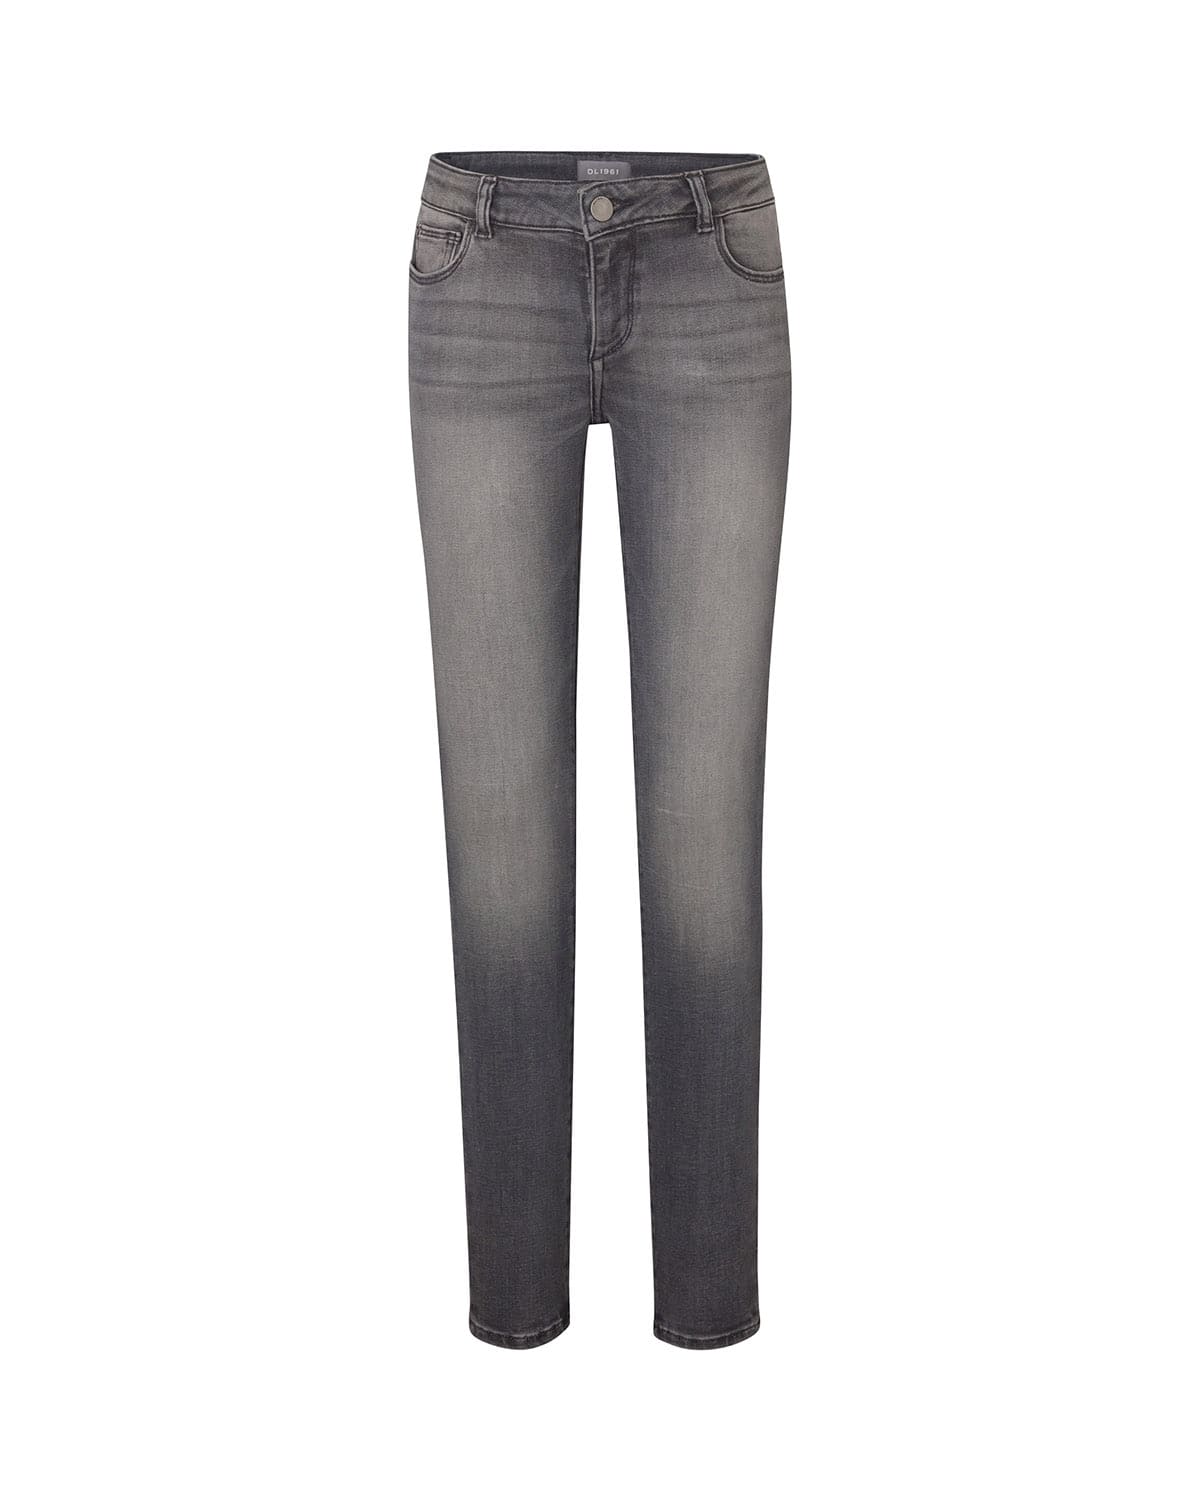 DL Premium Denim Girl's Chloe Denim Skinny Jeans, Size 7-16